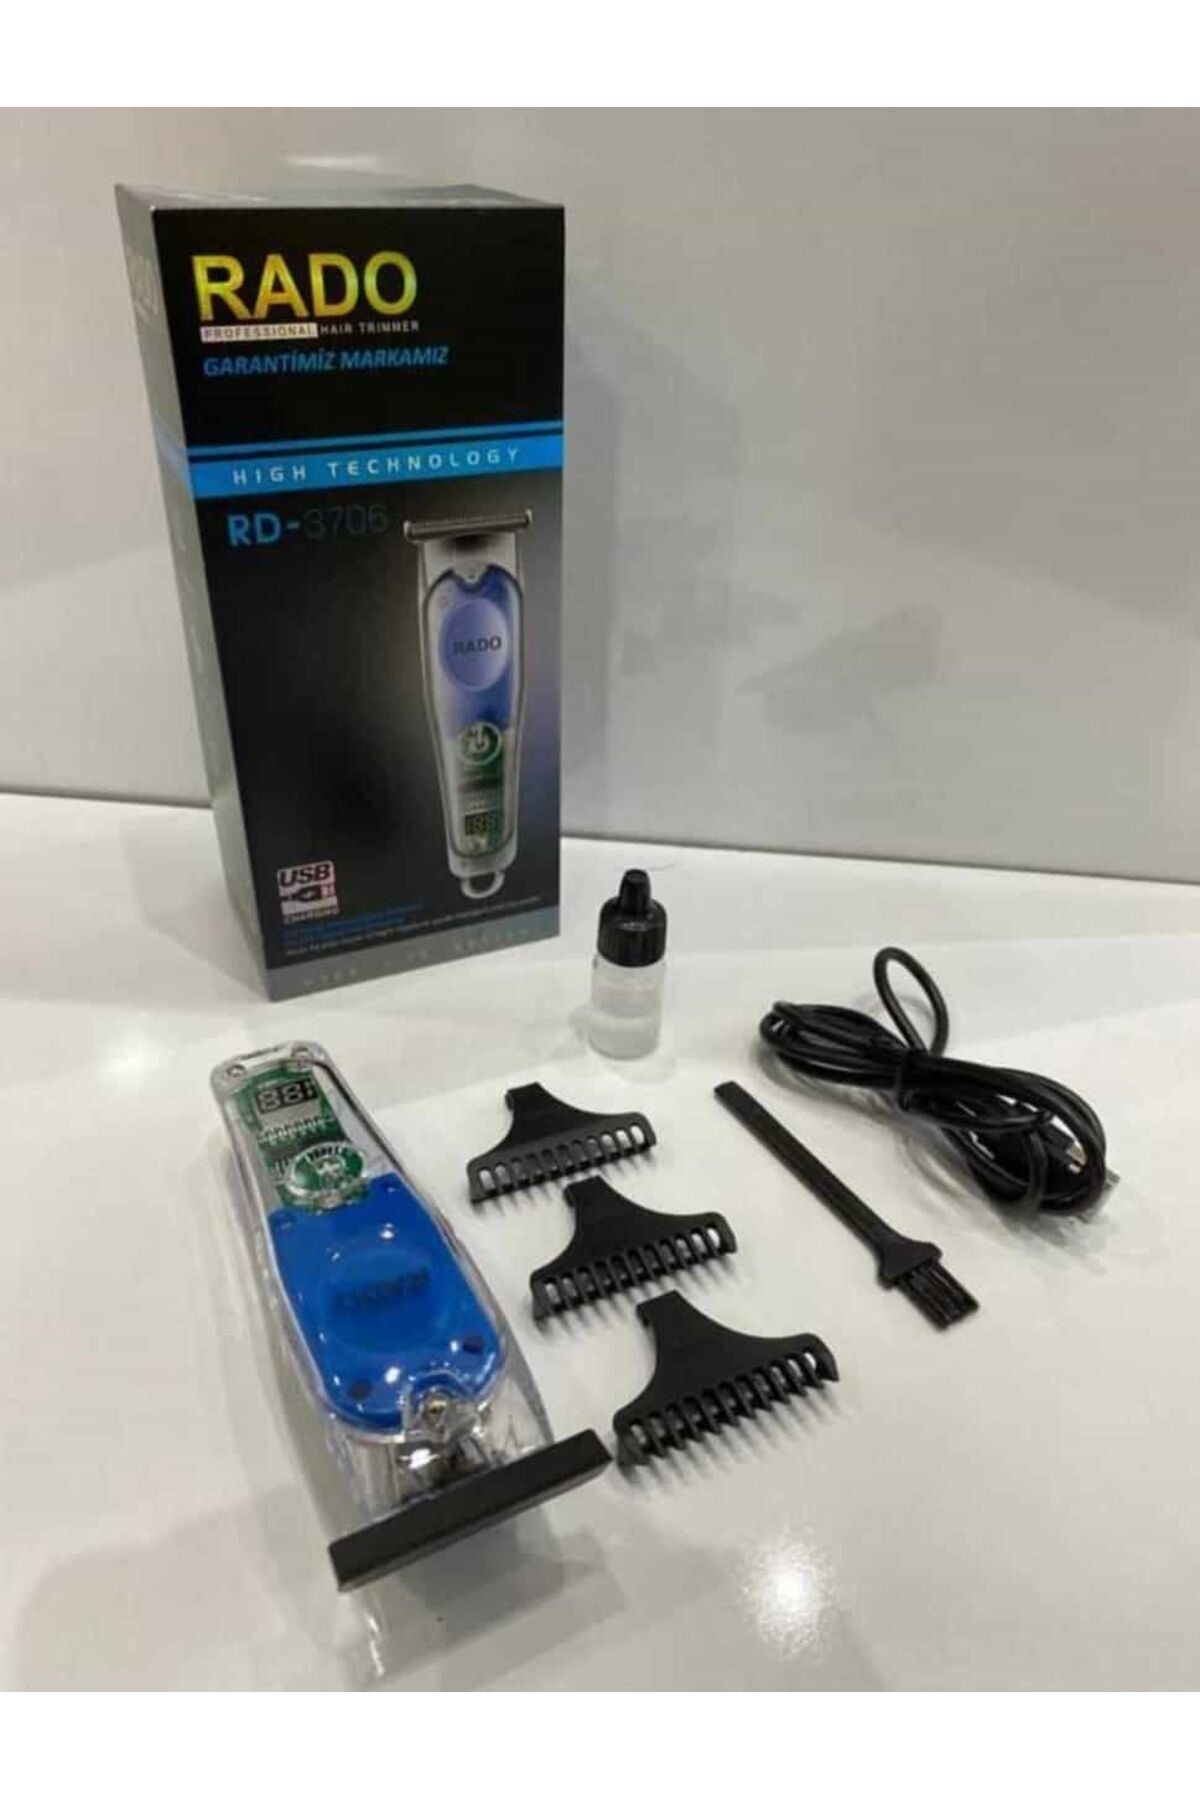 Genel Markalar Kuru RD-3706 Saç Sakal Tıraş Makinesi Yok Saç-Sakal-Vücut Yok İthalatçı Garantili 6 Saat ve Üstü 3-